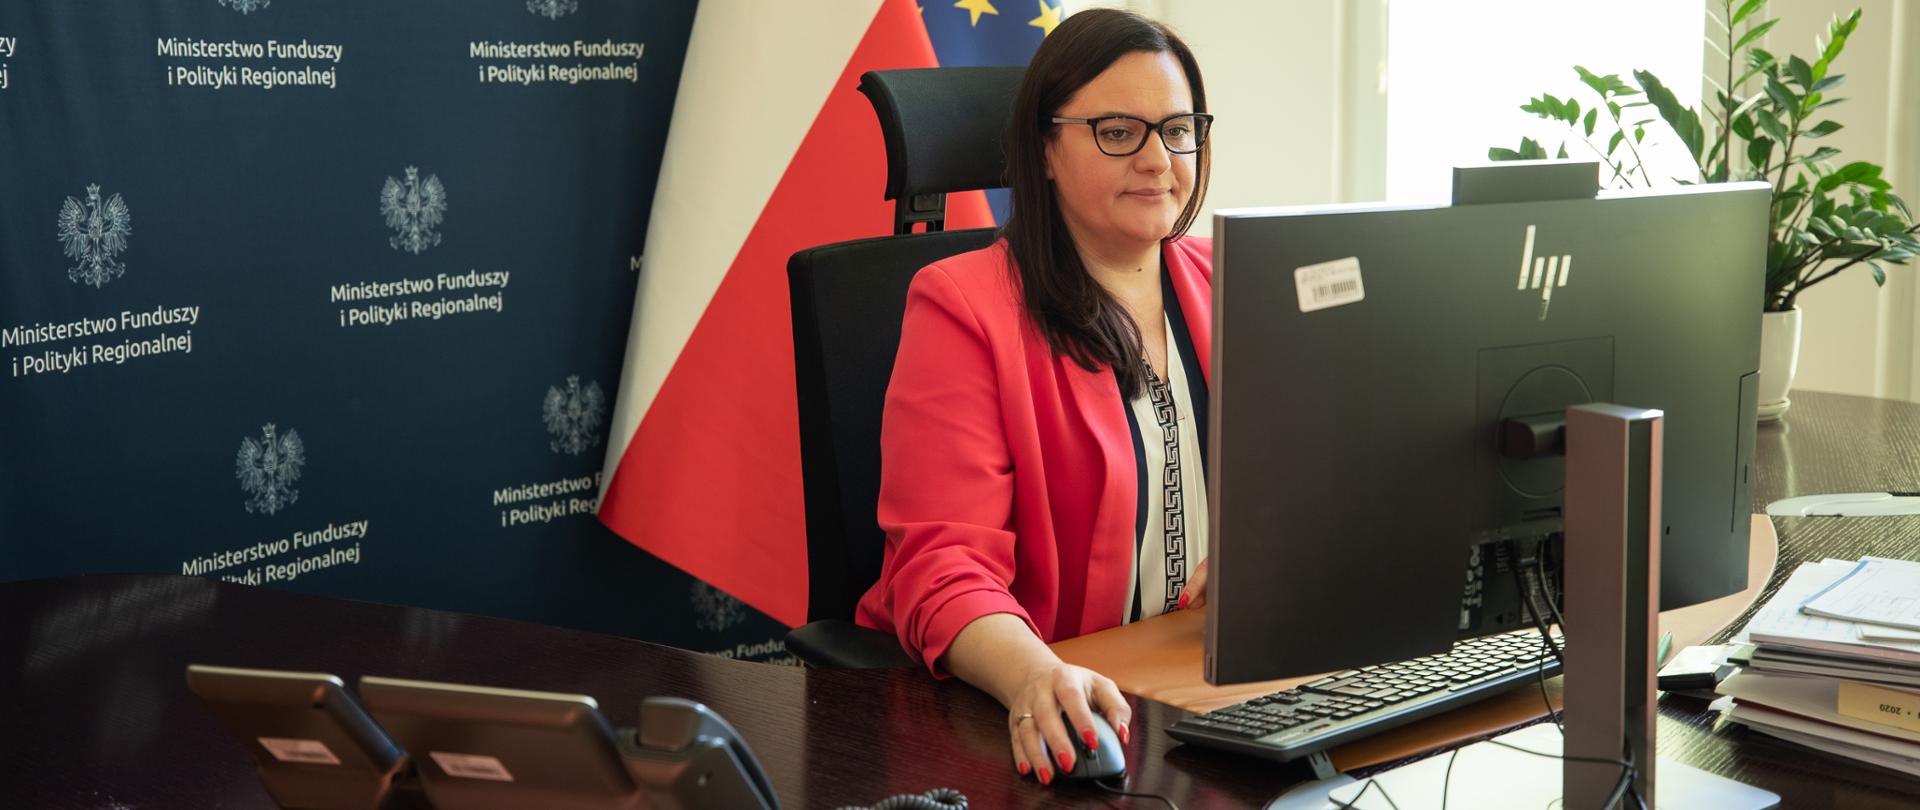 W gabinecie przy biurku z monitorem siedzi wiceminister Małgorzata Jarosińska-Jedynak. Za nią ścianka MFiPR i flagi UE i PL.